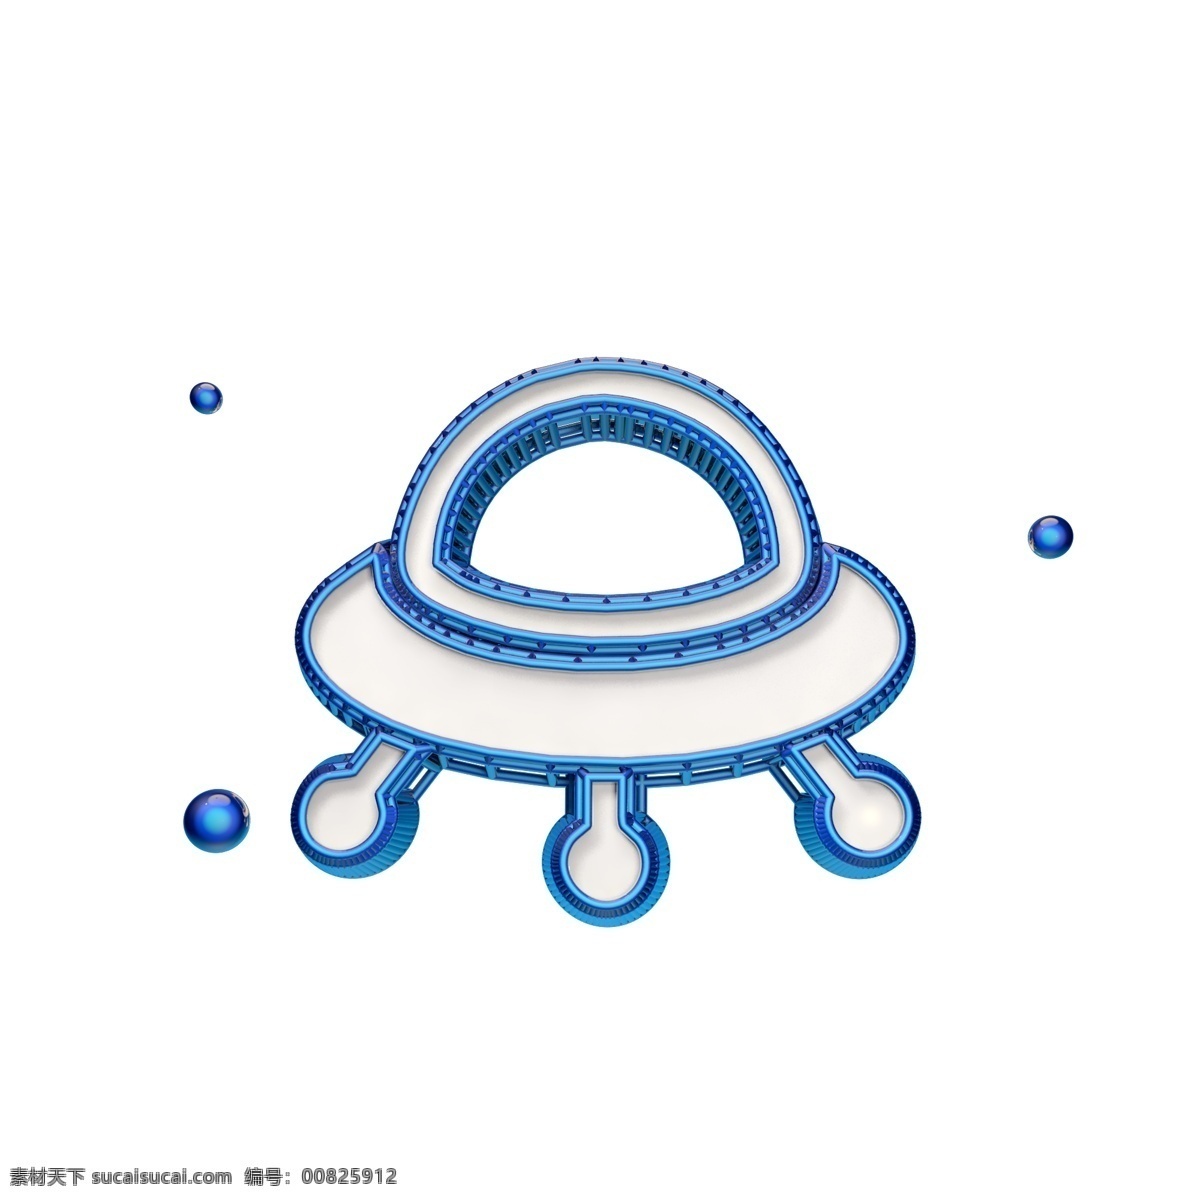 创意 ufo 图标 立体 蓝色